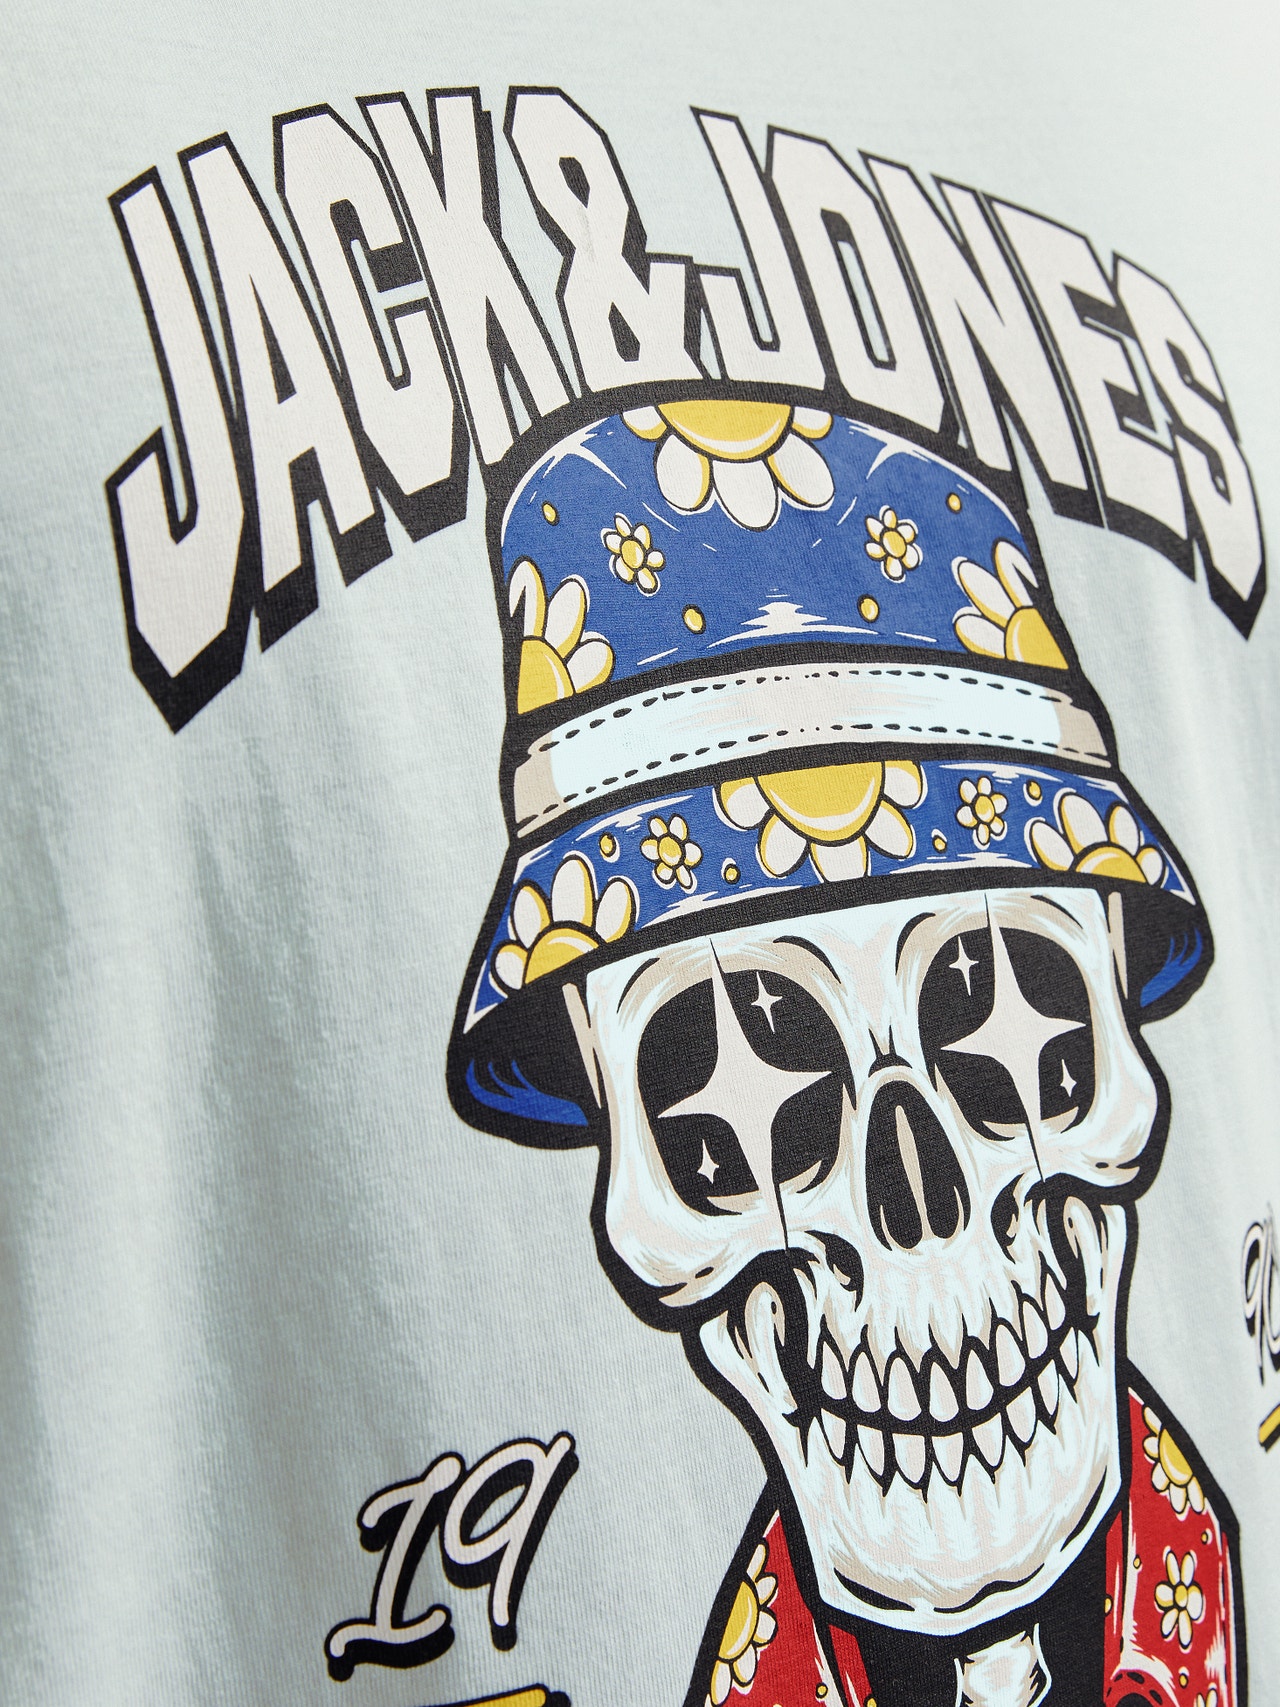 Jack & Jones Plus Size T-shirt Estampar -Skylight - 12261542